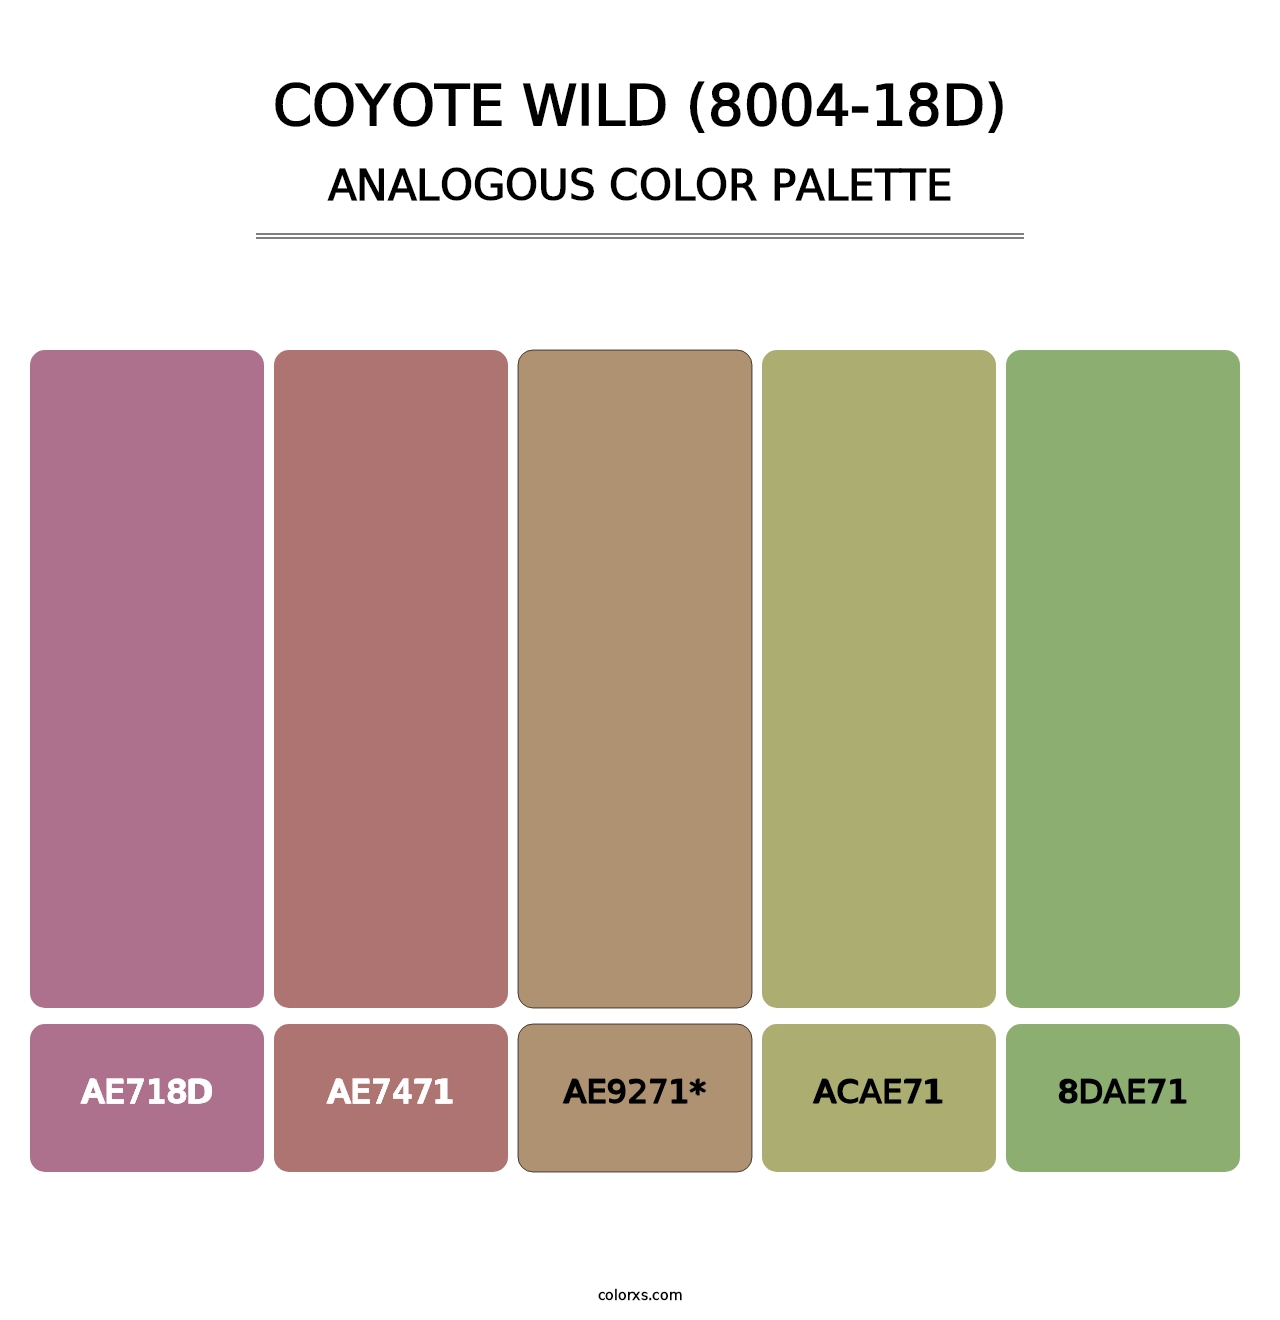 Coyote Wild (8004-18D) - Analogous Color Palette